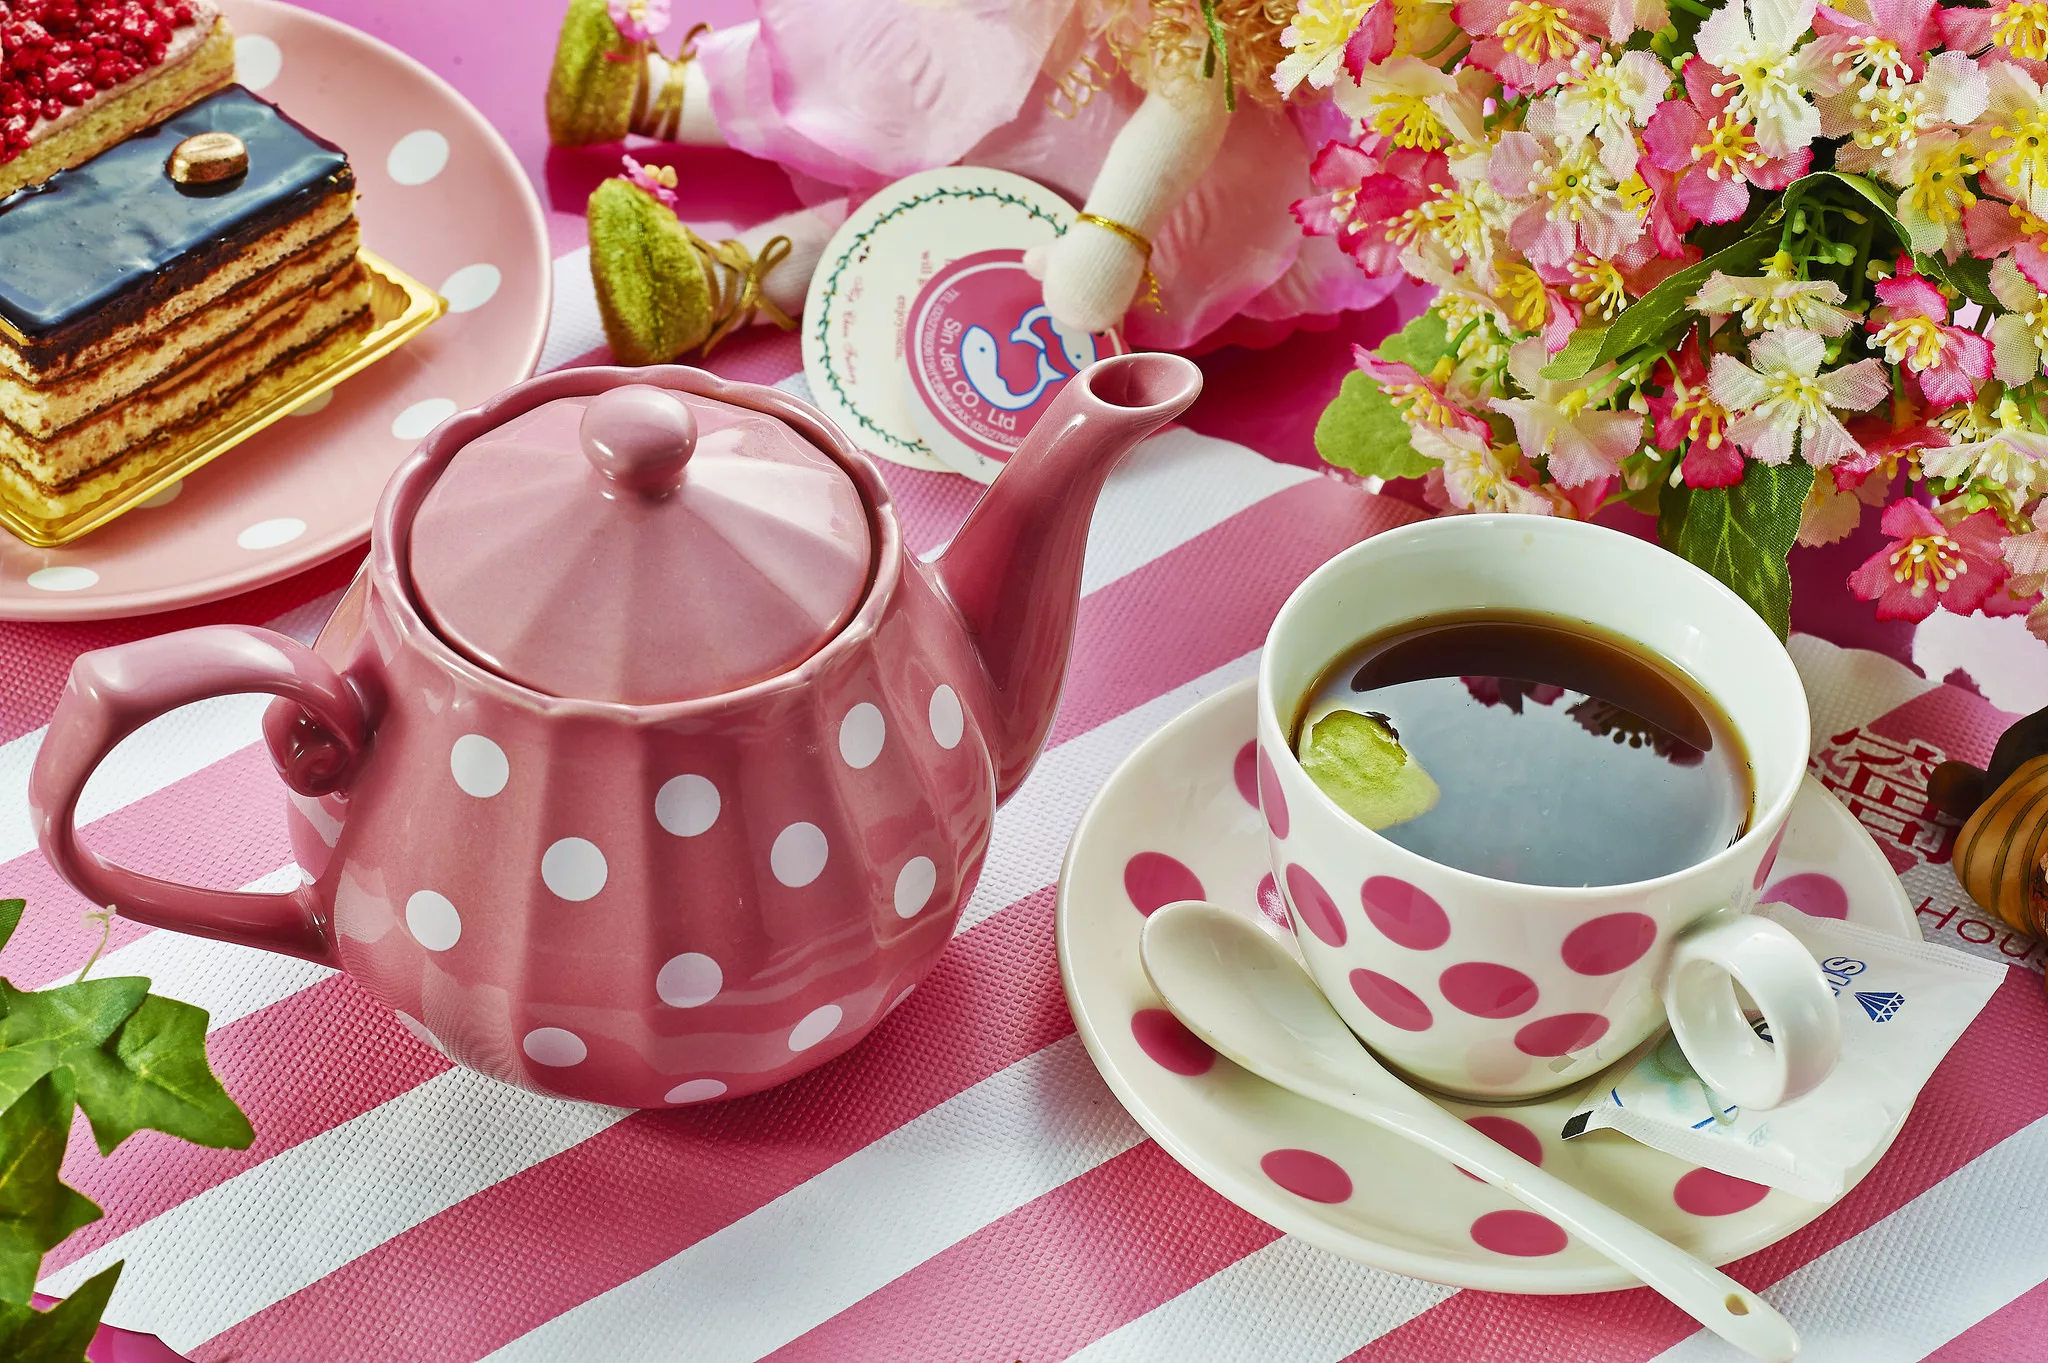 Картинка доброго утра вторника и хорошего настроения. Чаепитие. Красивое чаепитие. С добрым утром. Весеннее чаепитие.